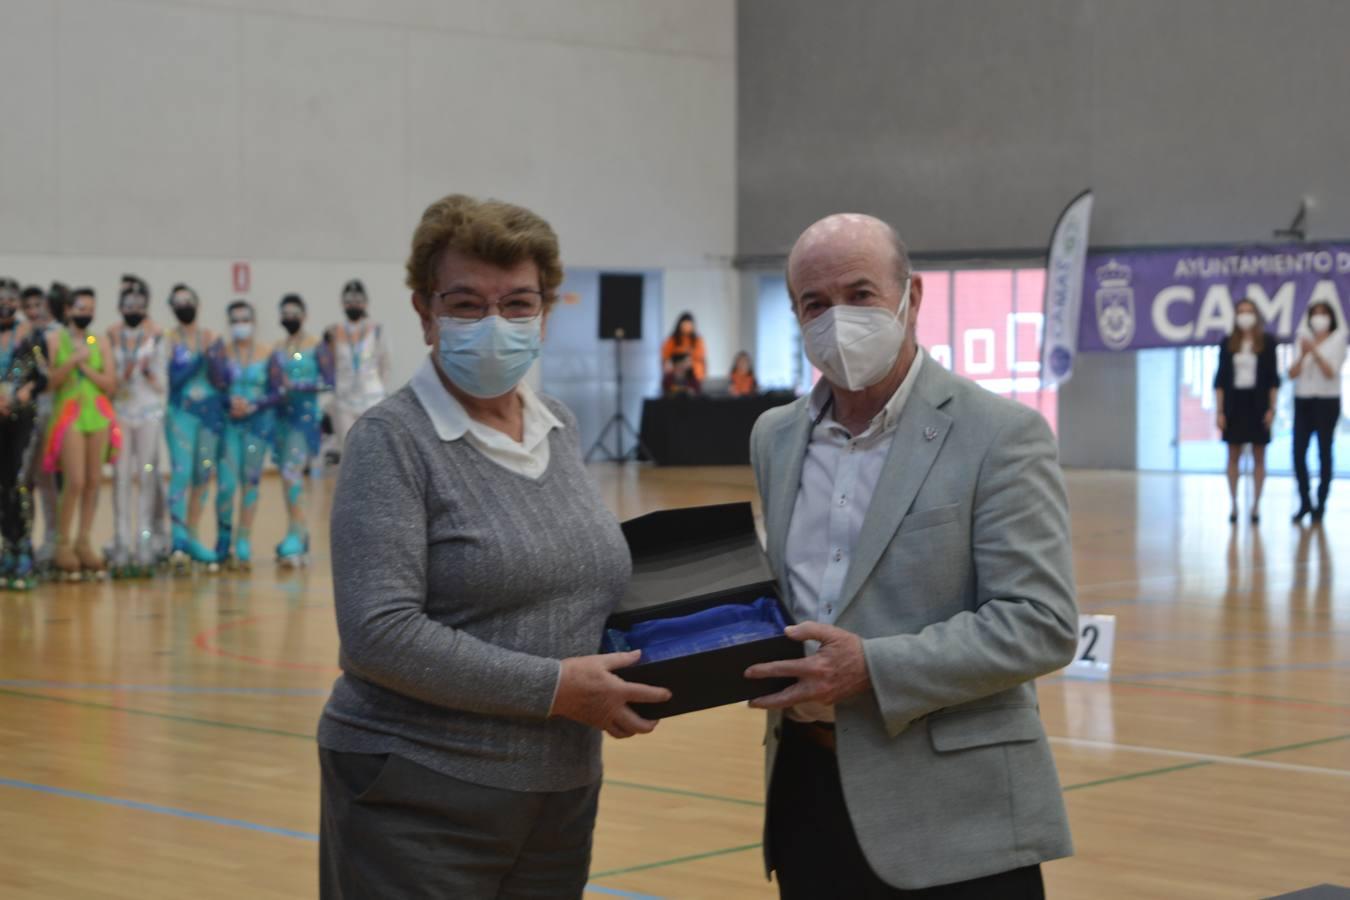 El vicepresidente de la Federación Andaluza de Patinaje, Luis Javier Gómez del Moral, le entregó una placa a Angélica Ortiz Comas, por su labor en el desarrollo y promoción por Andalucía del patinaje artístico sobre ruedas durante 45 años